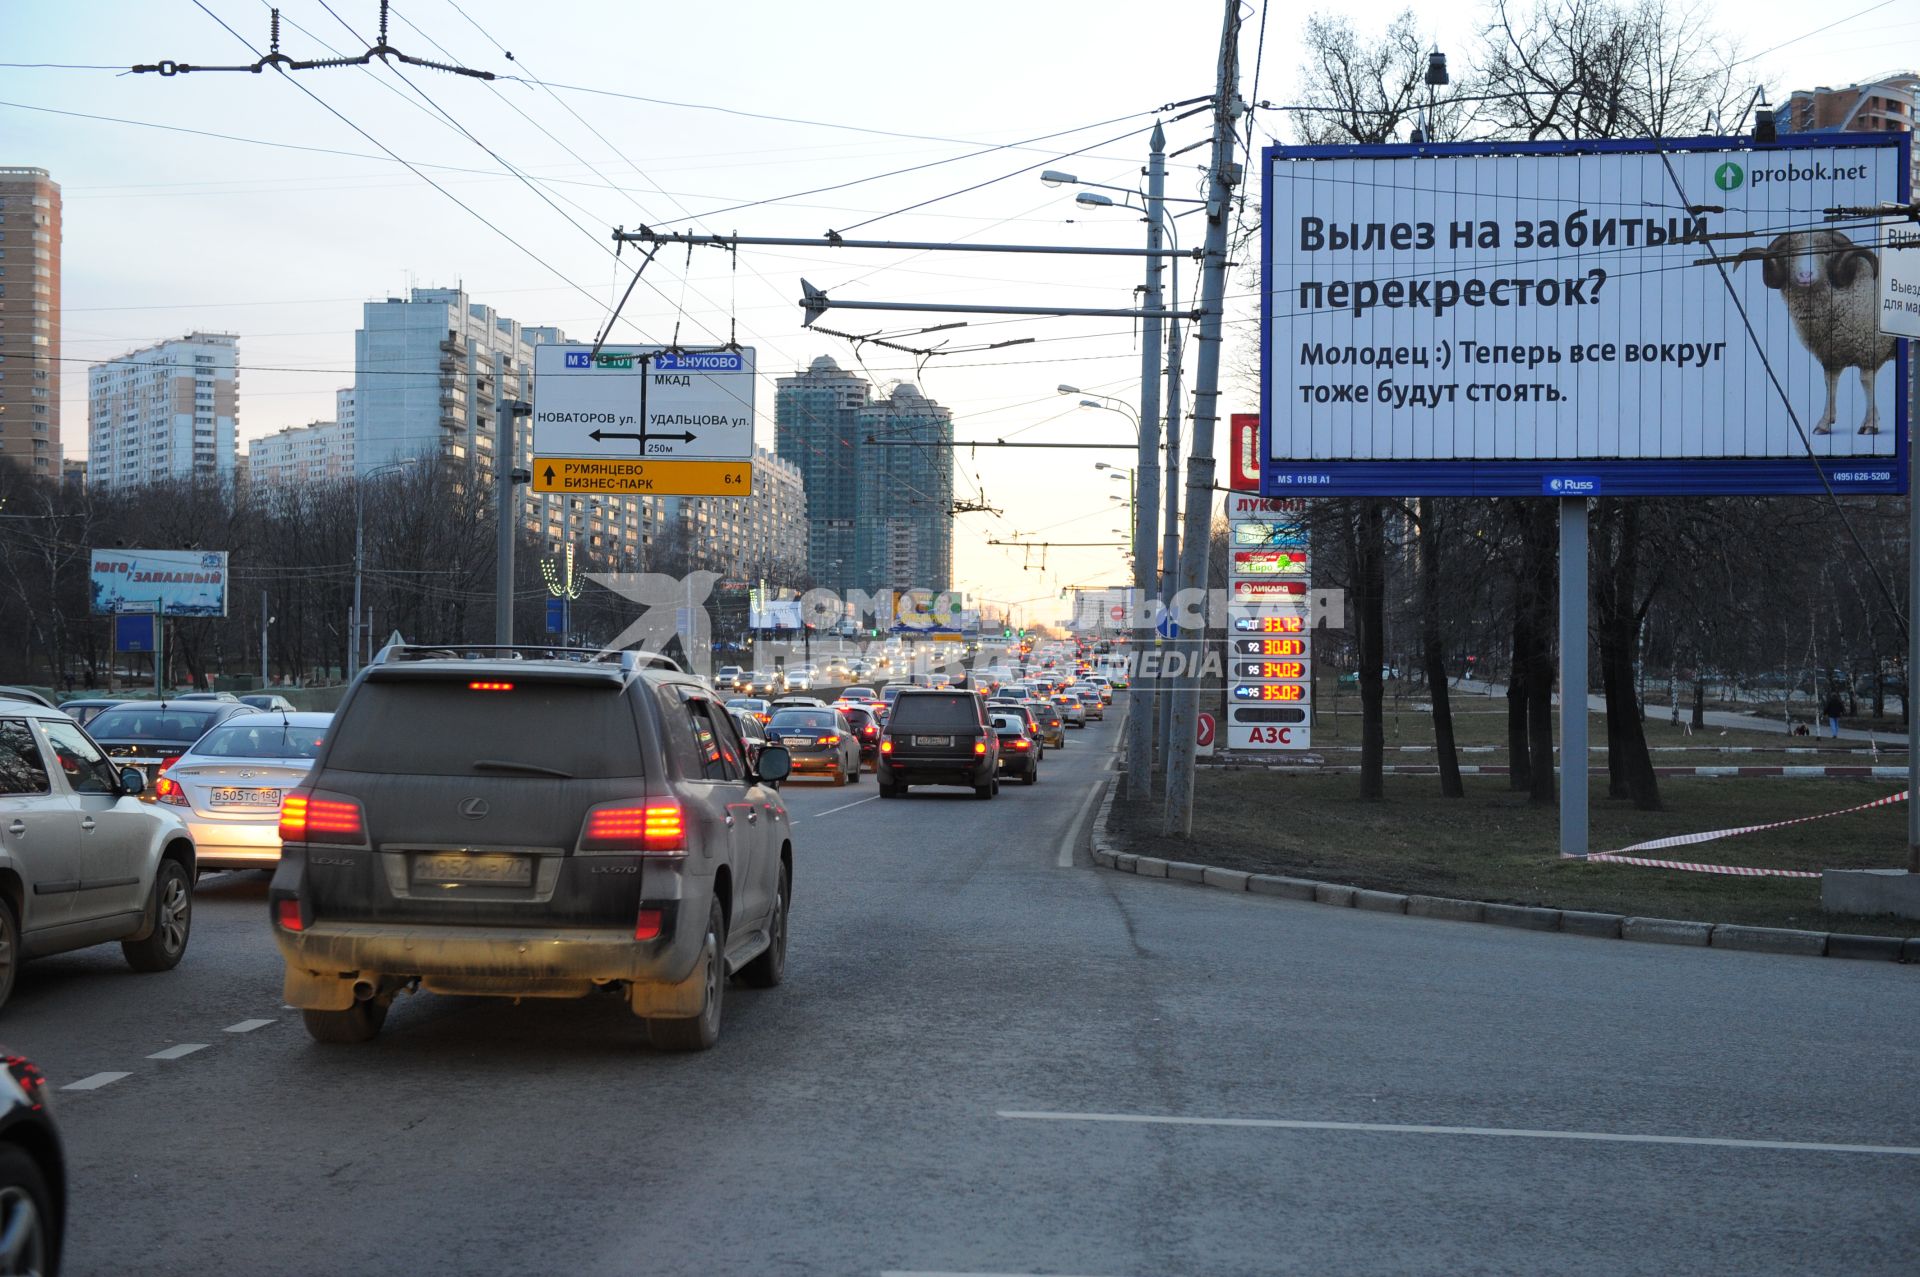 Рекламная кампания проекта Probok.net против хамства на дорогах. На снимке: билборд `Вылез на забитый перекресток?`.